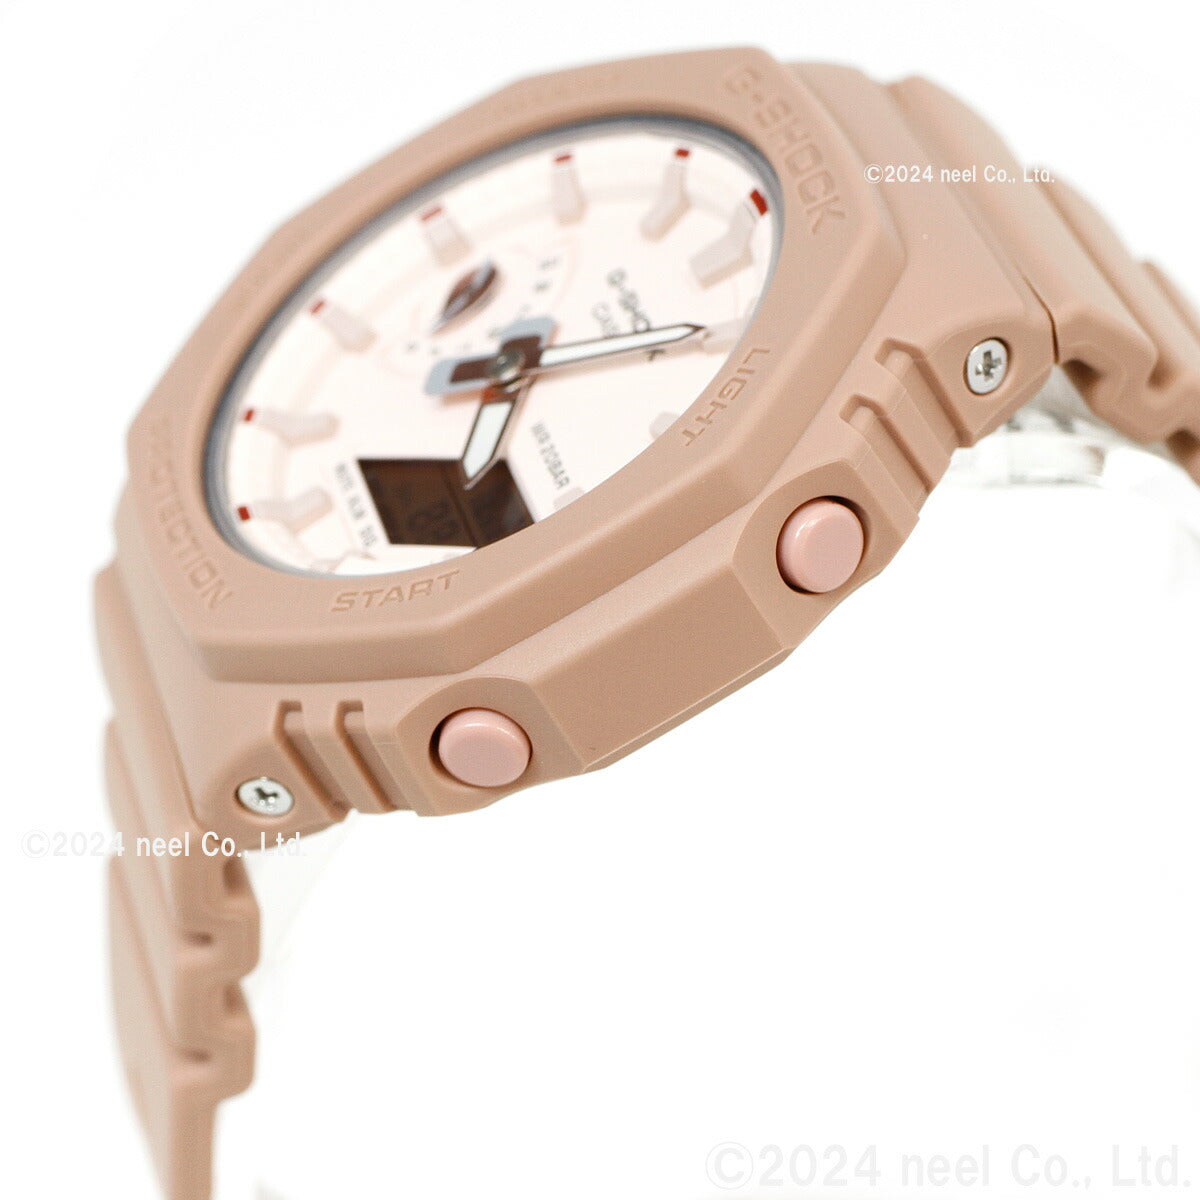 G-SHOCK カシオ Gショック CASIO アナデジ 腕時計 メンズ レディース GMA-S2100NC-4A2JF GA-2100 バジルの葉 モチーフ 小型化・薄型化モデル